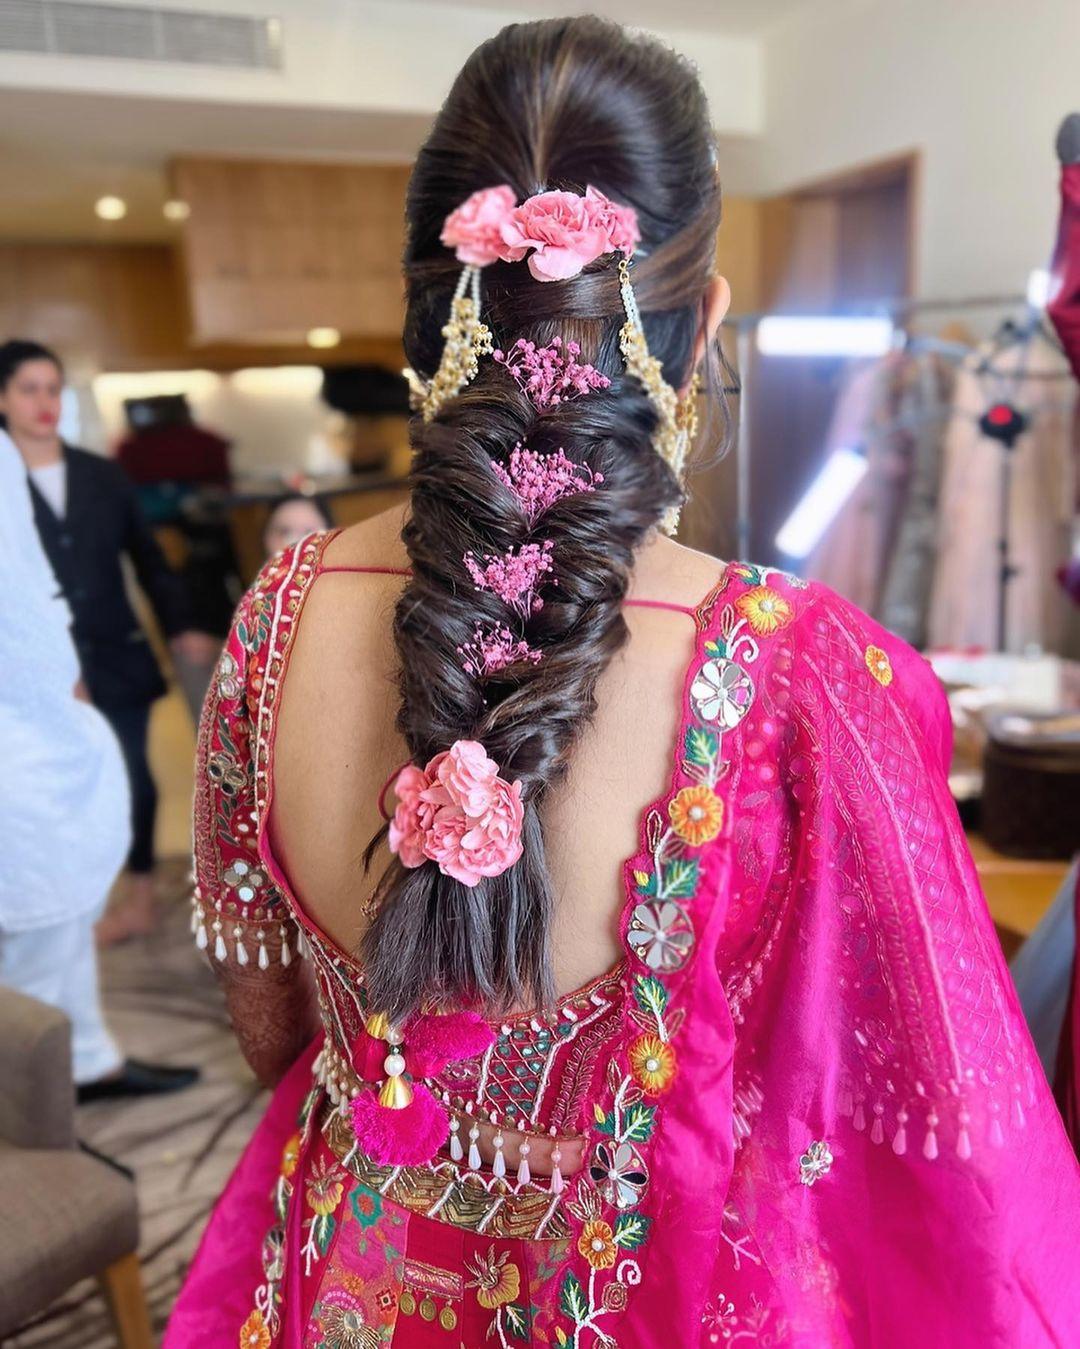 Wedding hair trial run - side braid - YouTube